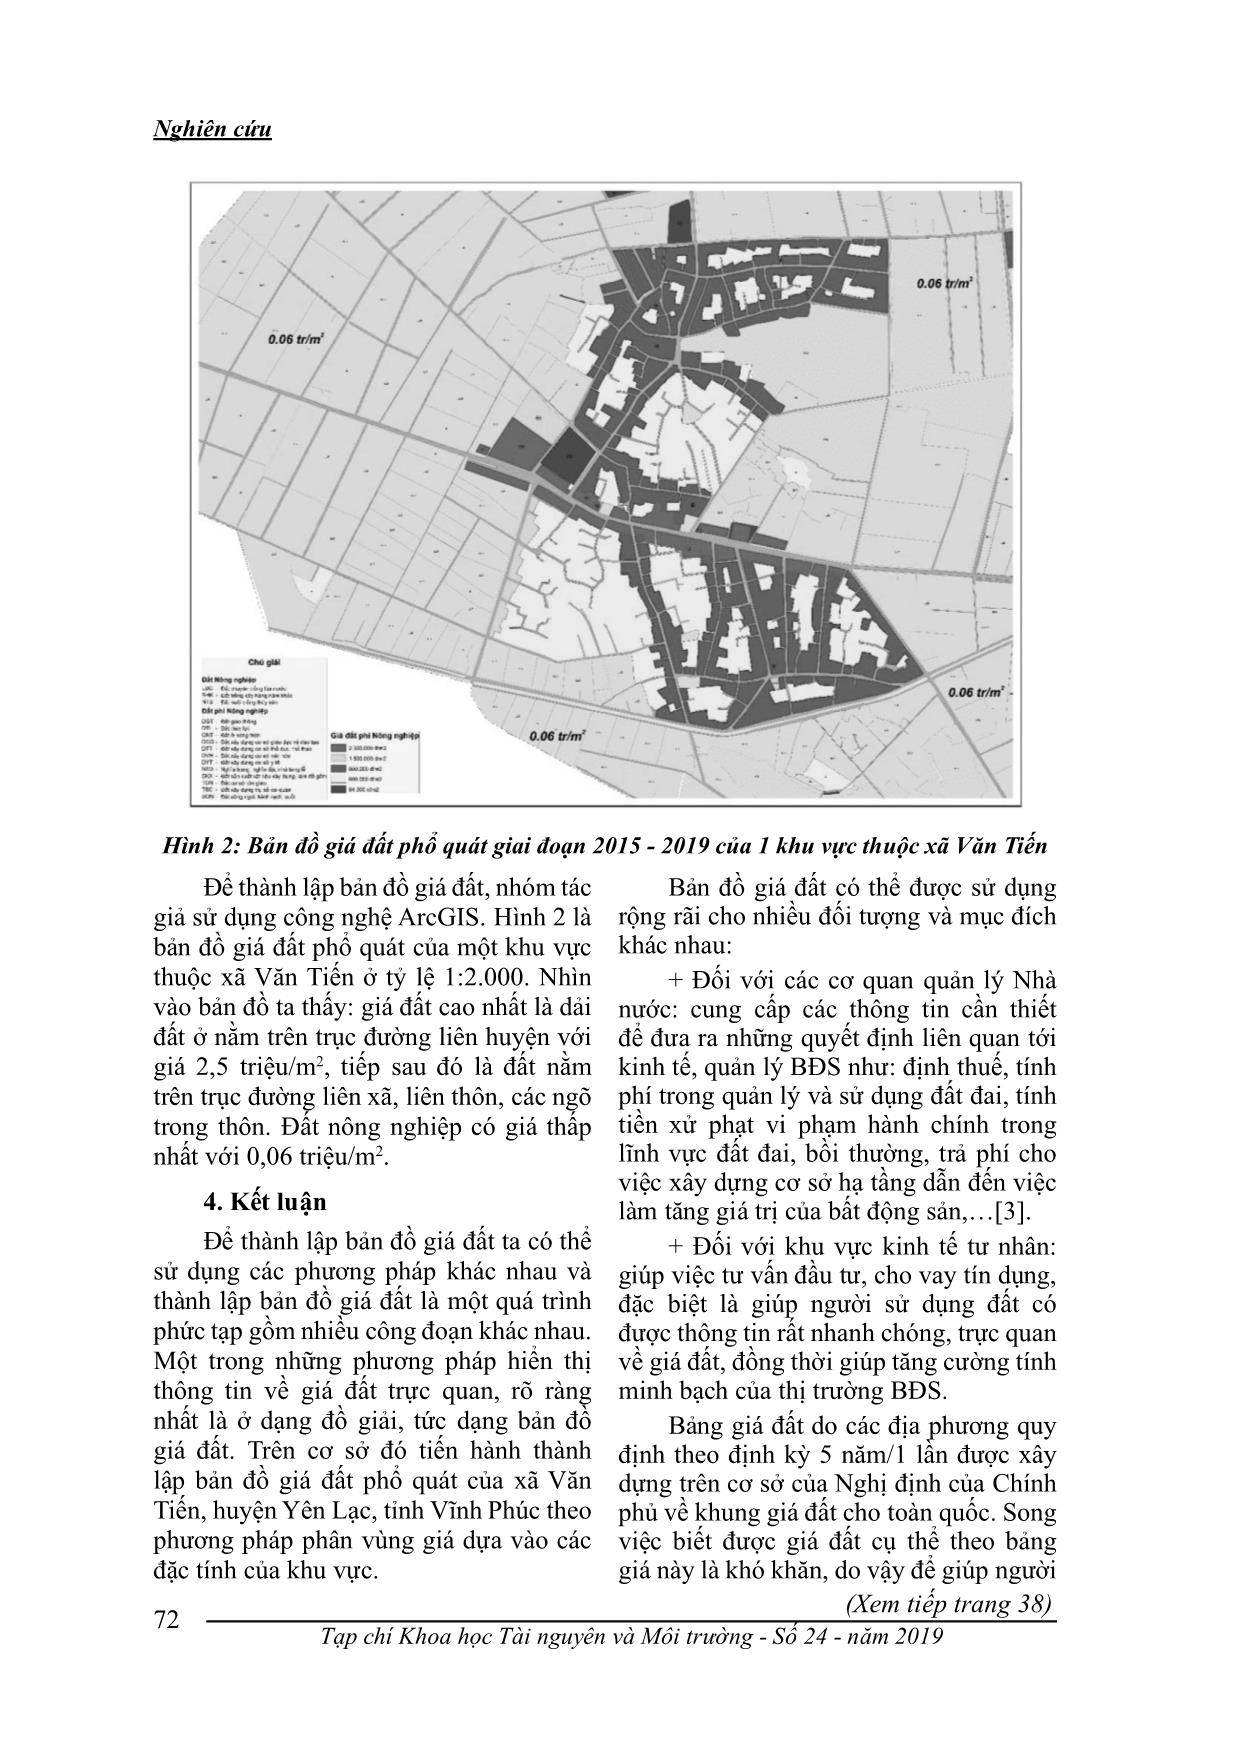 Các phương pháp thành lập bản đồ giá đất và thực nghiệm tại xã Văn Tiến, huyện Yên Lạc, tỉnh Vĩnh Phúc trang 5